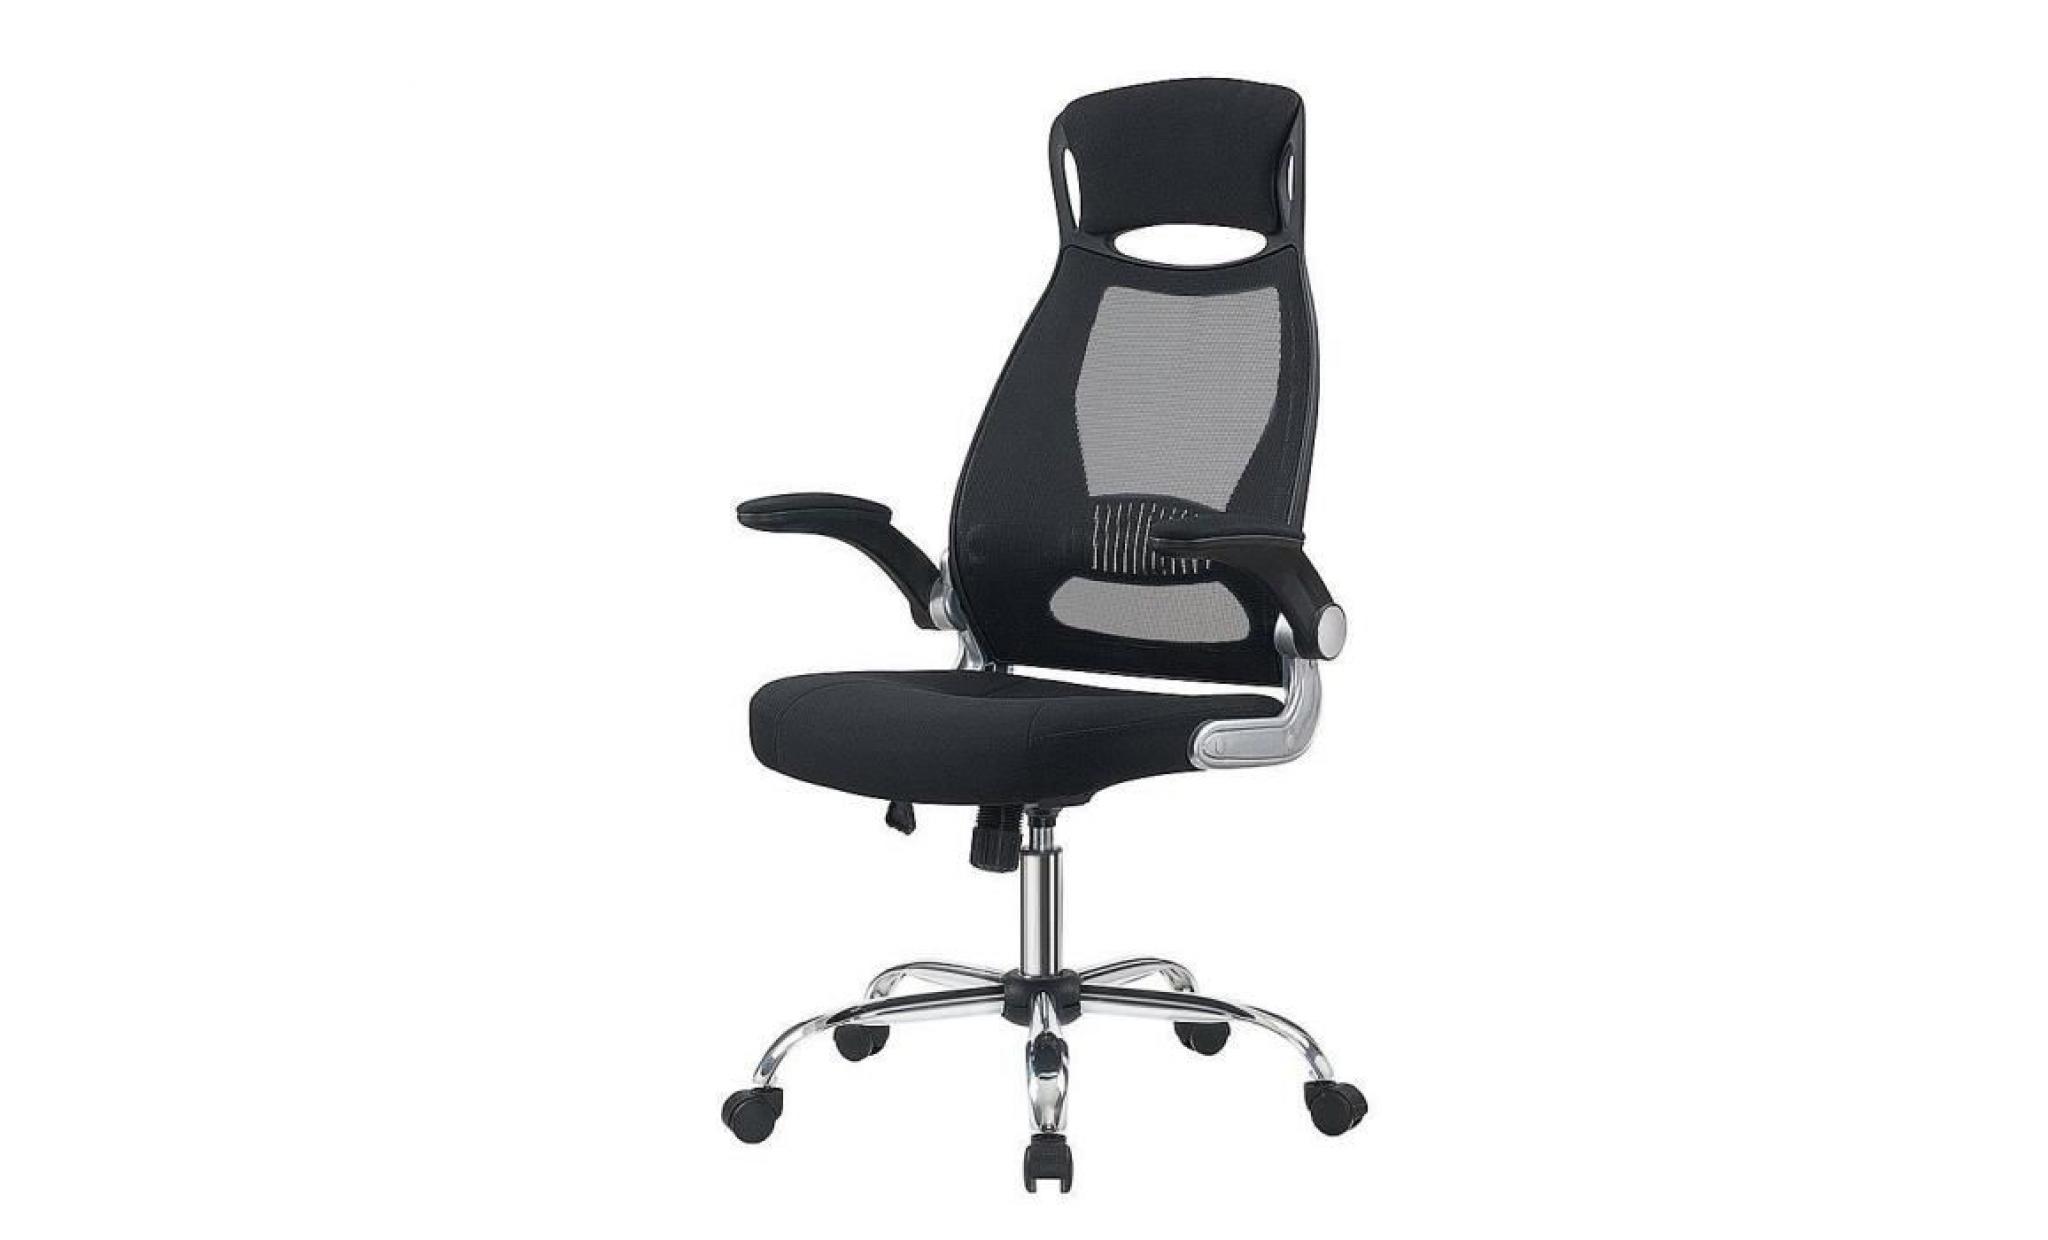 fauteuil de bureau   hauteur réglable   siège ergonomique   noir   intimate wm heart